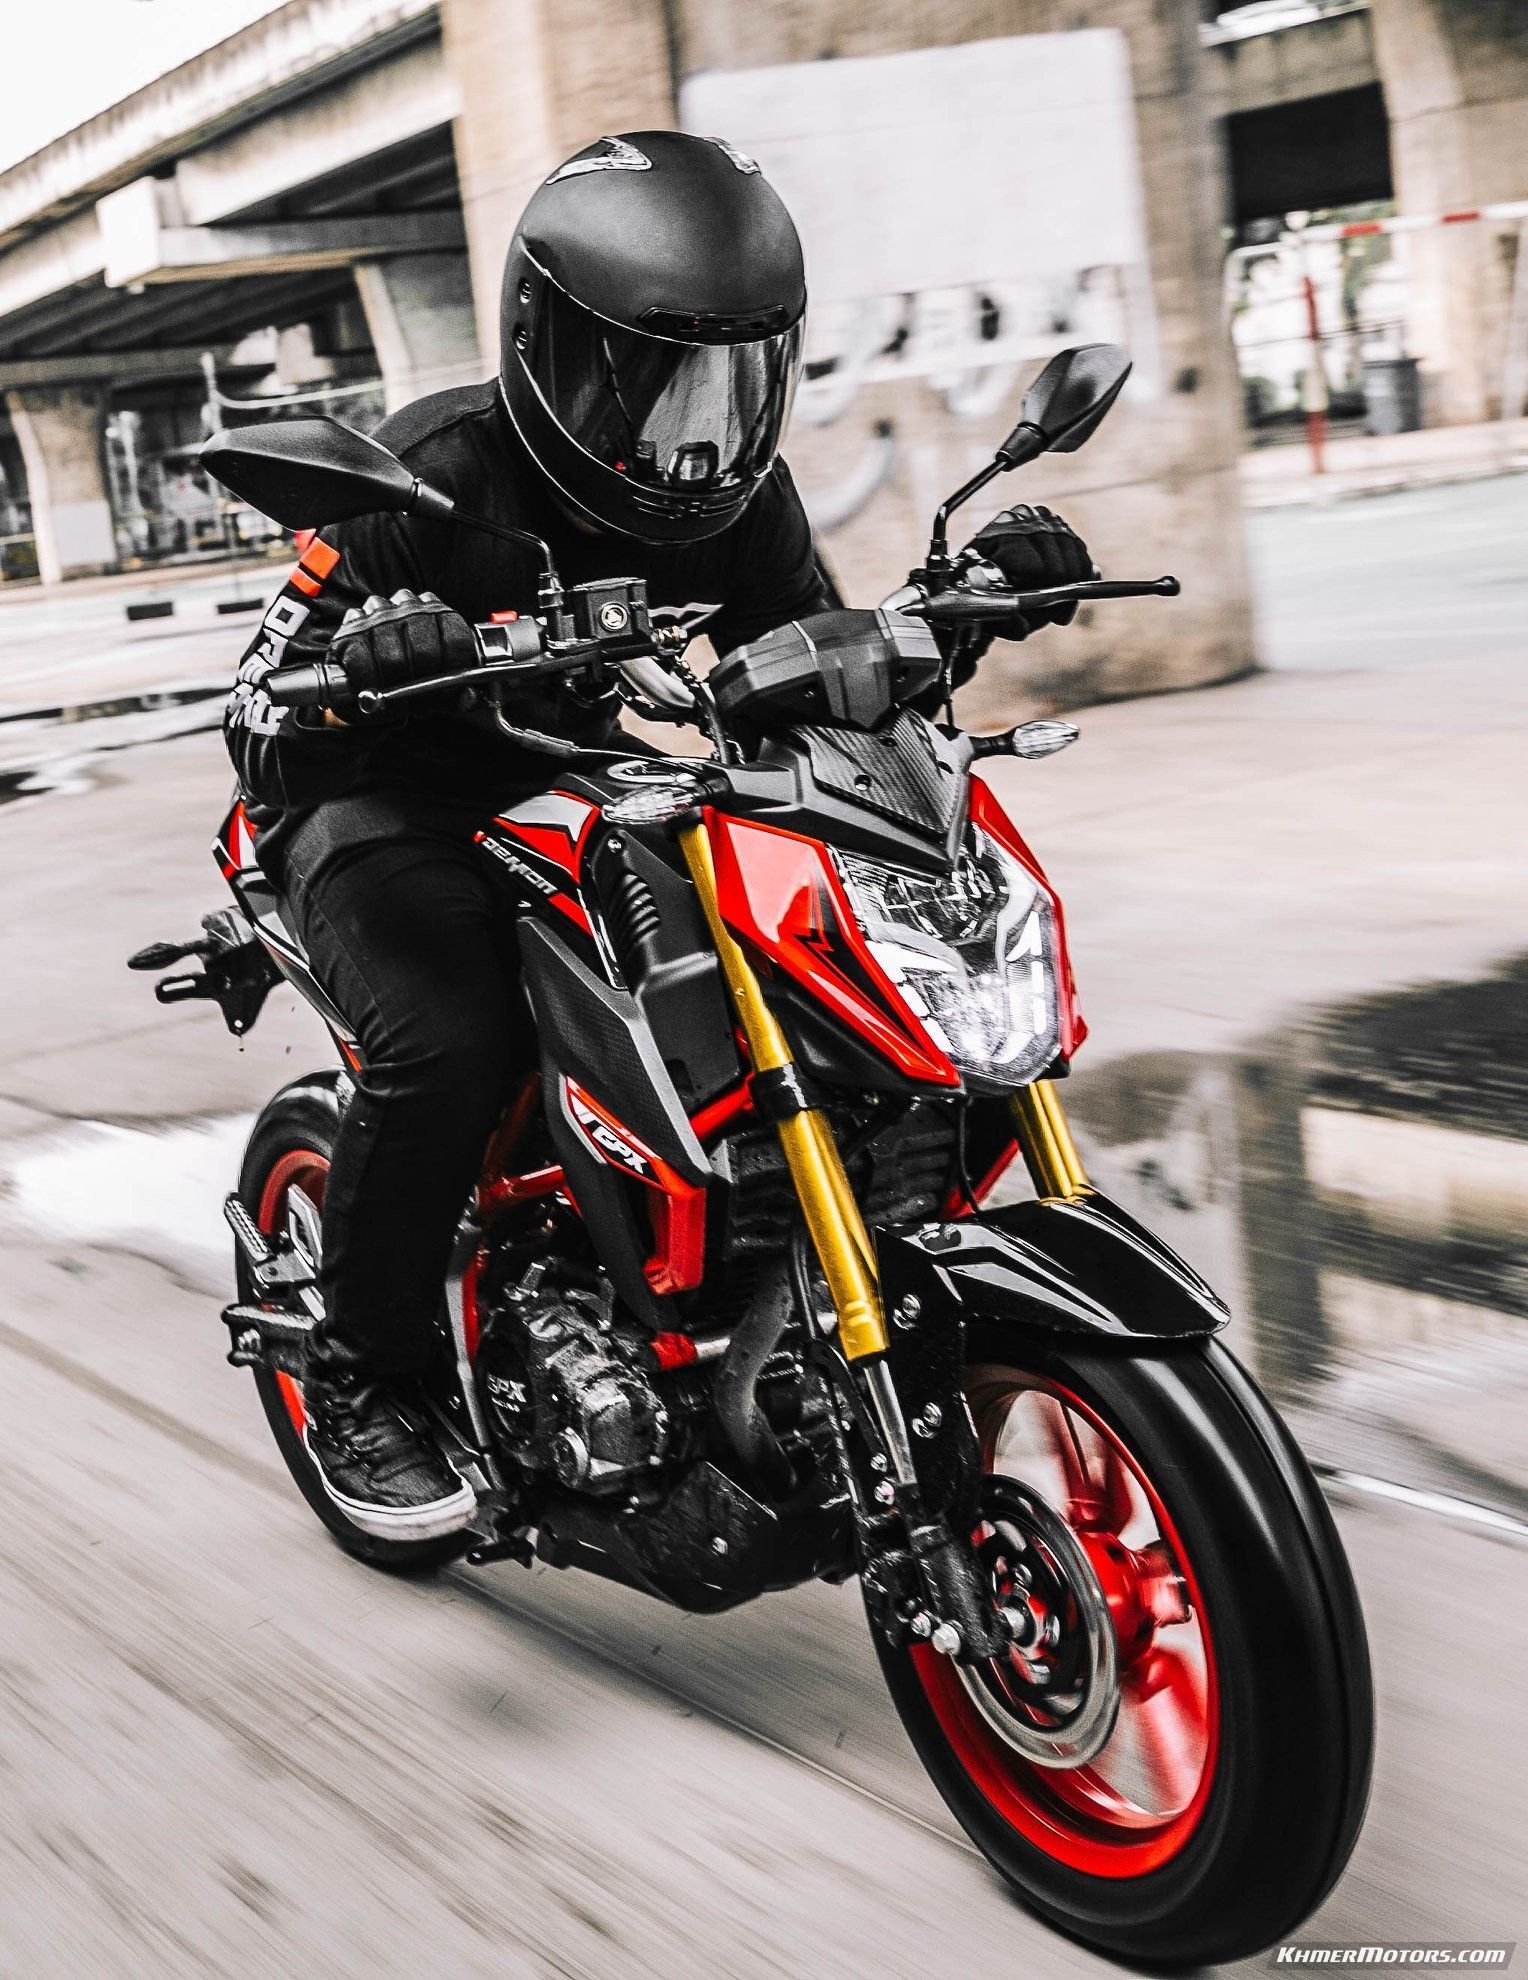 GPX Demon 150 GN độ mang vẻ đẹp tinh tế của biker Thailand  2banhvn